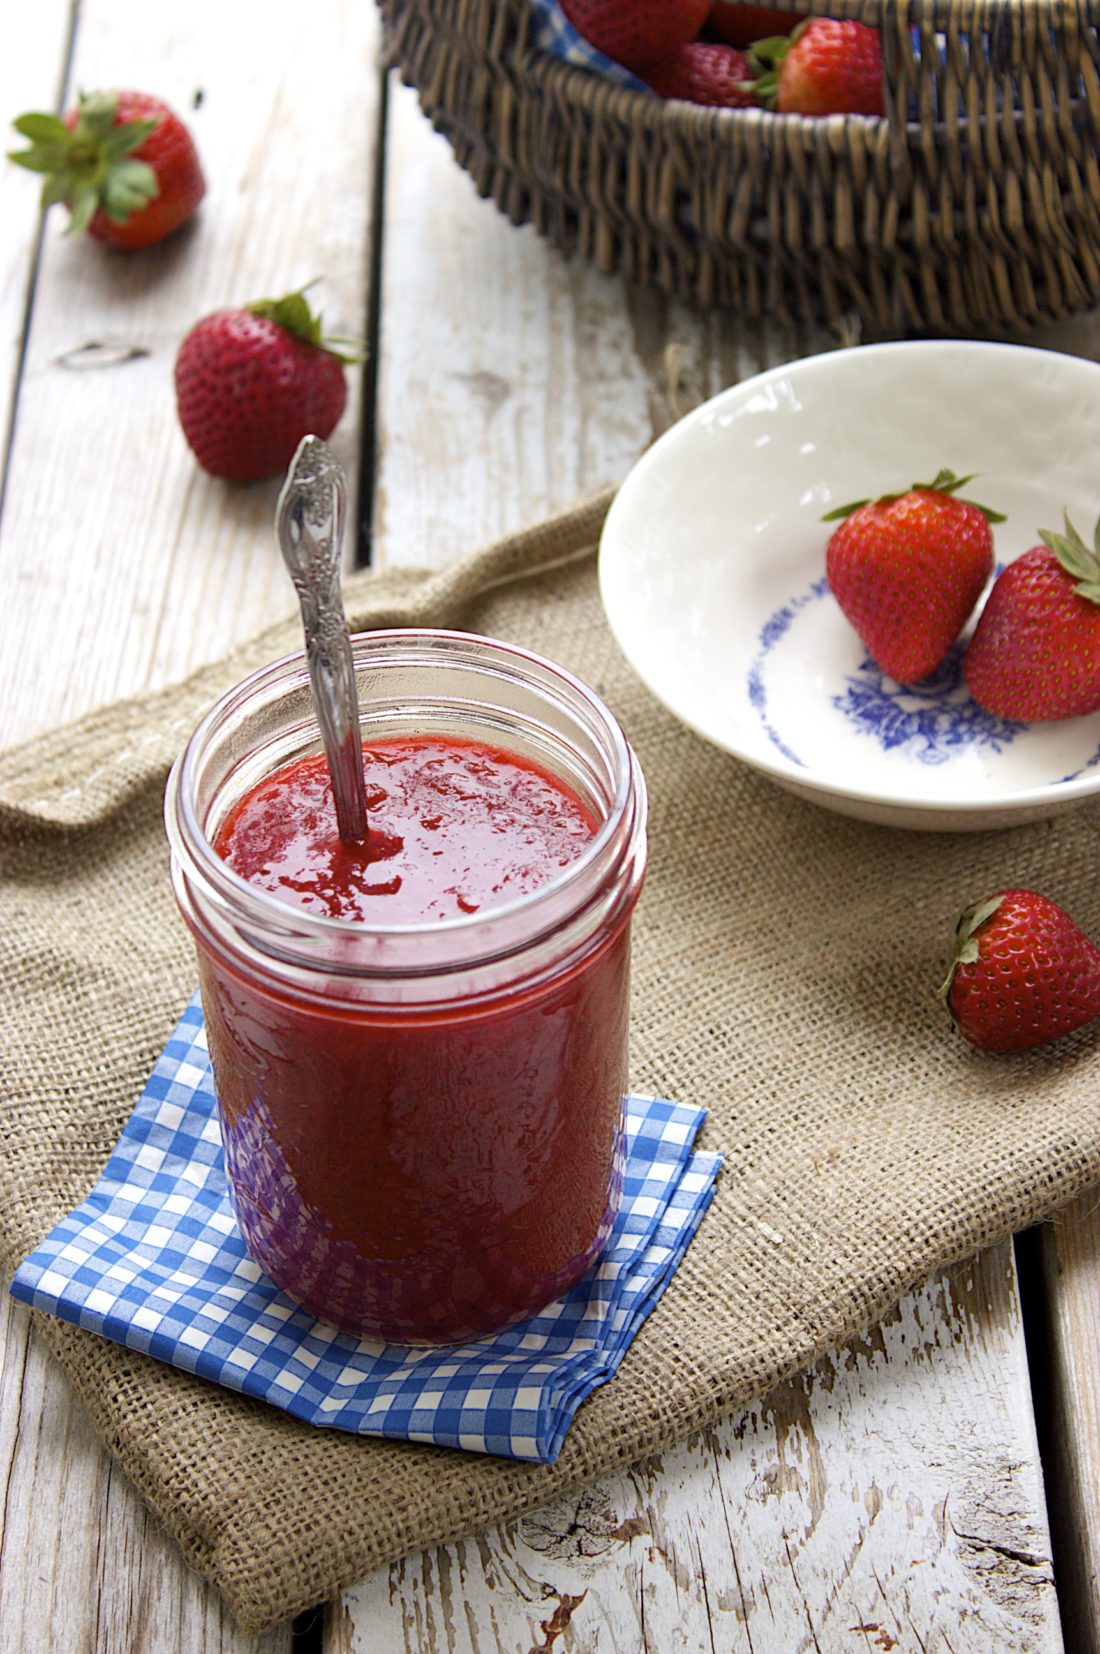 Roasted Strawberry Jam